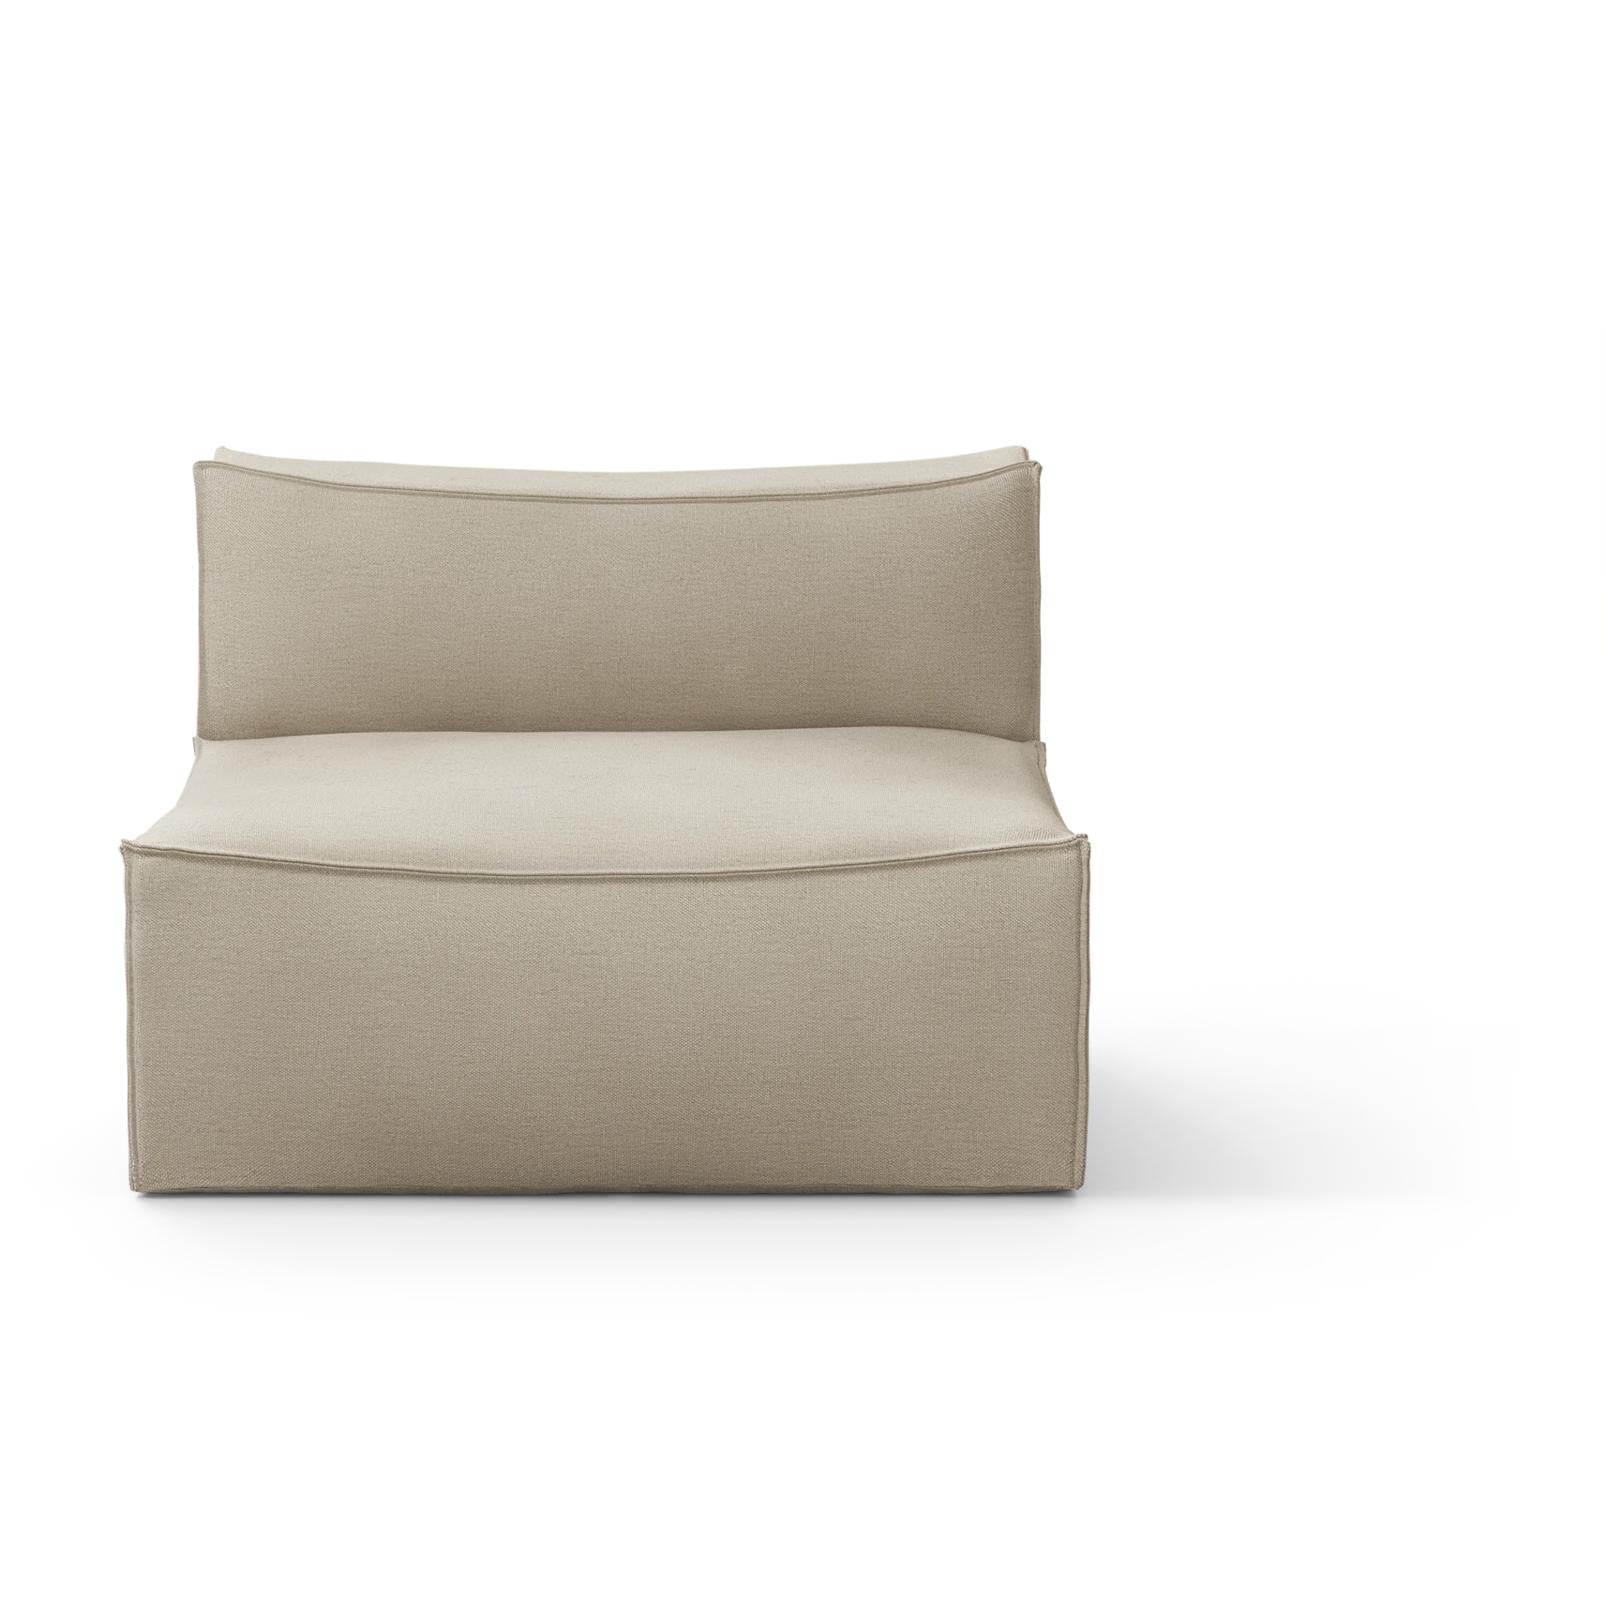 Ferm Living Catena Sofa Center L100 Rich Linen, Natural